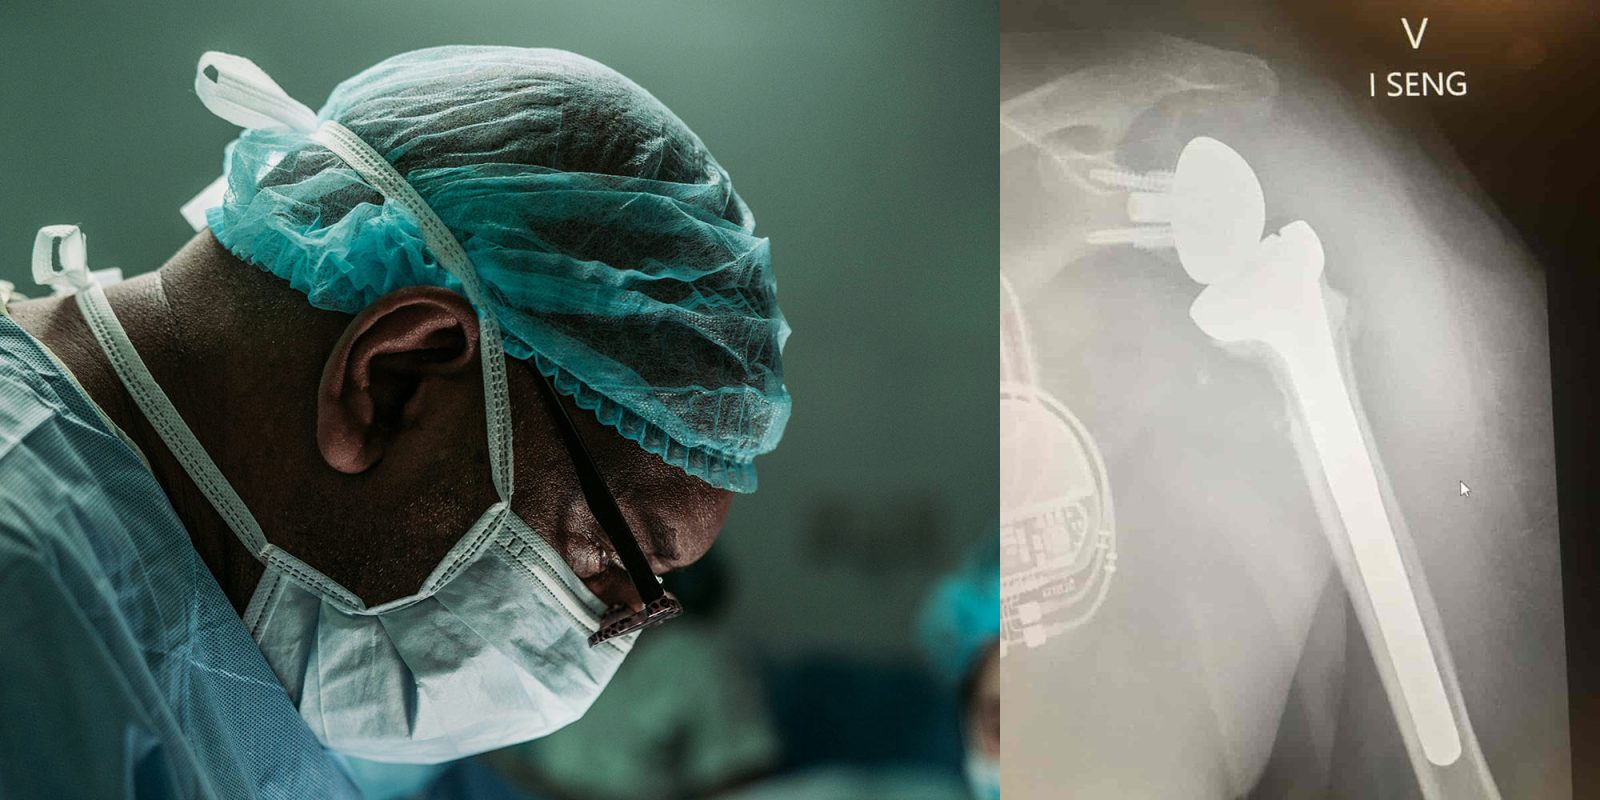 Vision Pro-chirurgie assistée |  Chirurgien et radiographie du remplacement inversé de l'épaule